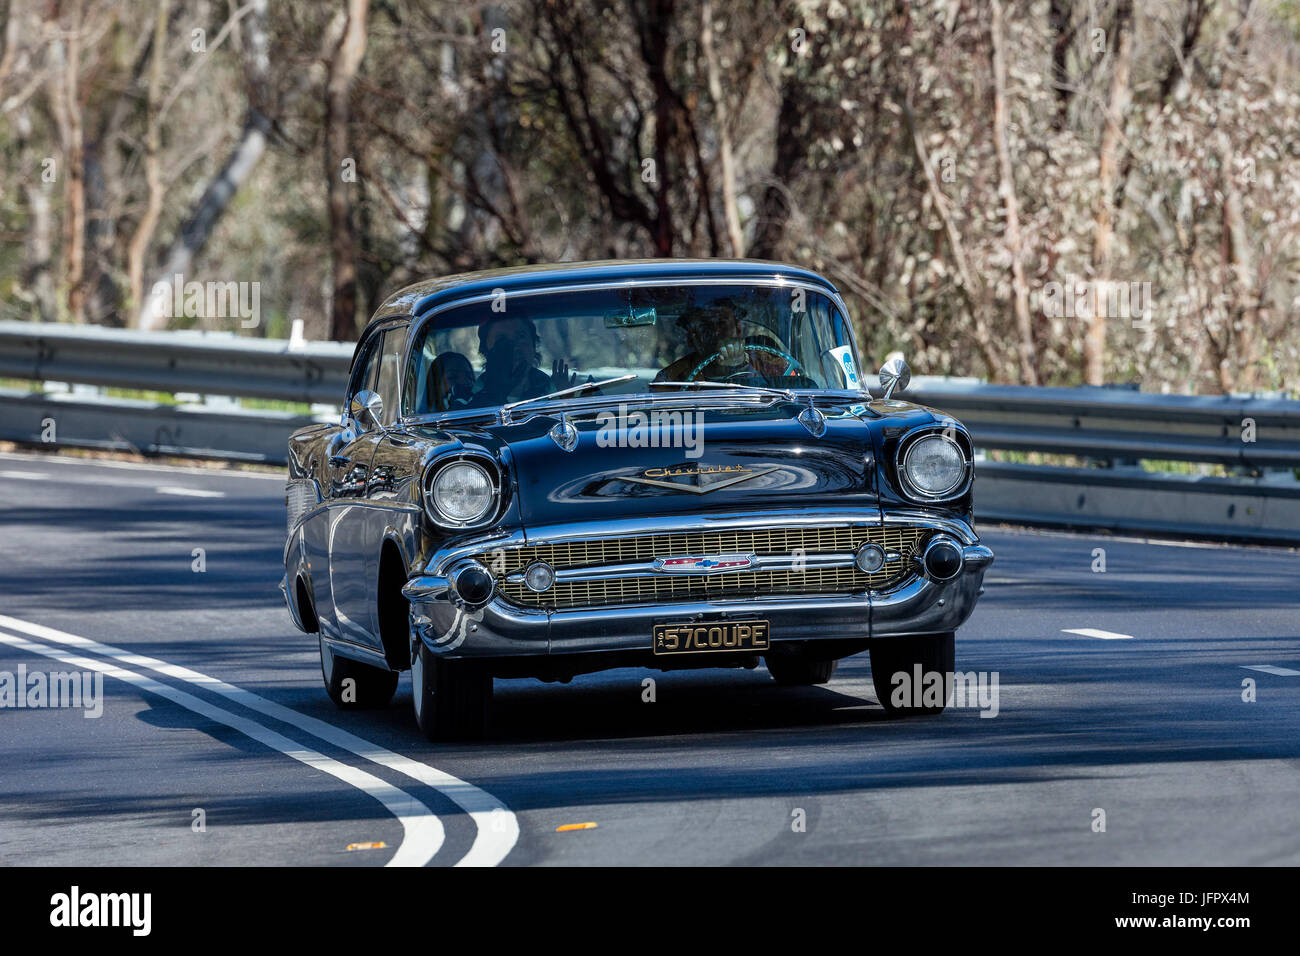 Jahrgang 1957 Chevrolet Bel Air Coupe fahren auf der Landstraße in der Nähe der Stadt Birdwood, South Australia. Stockfoto